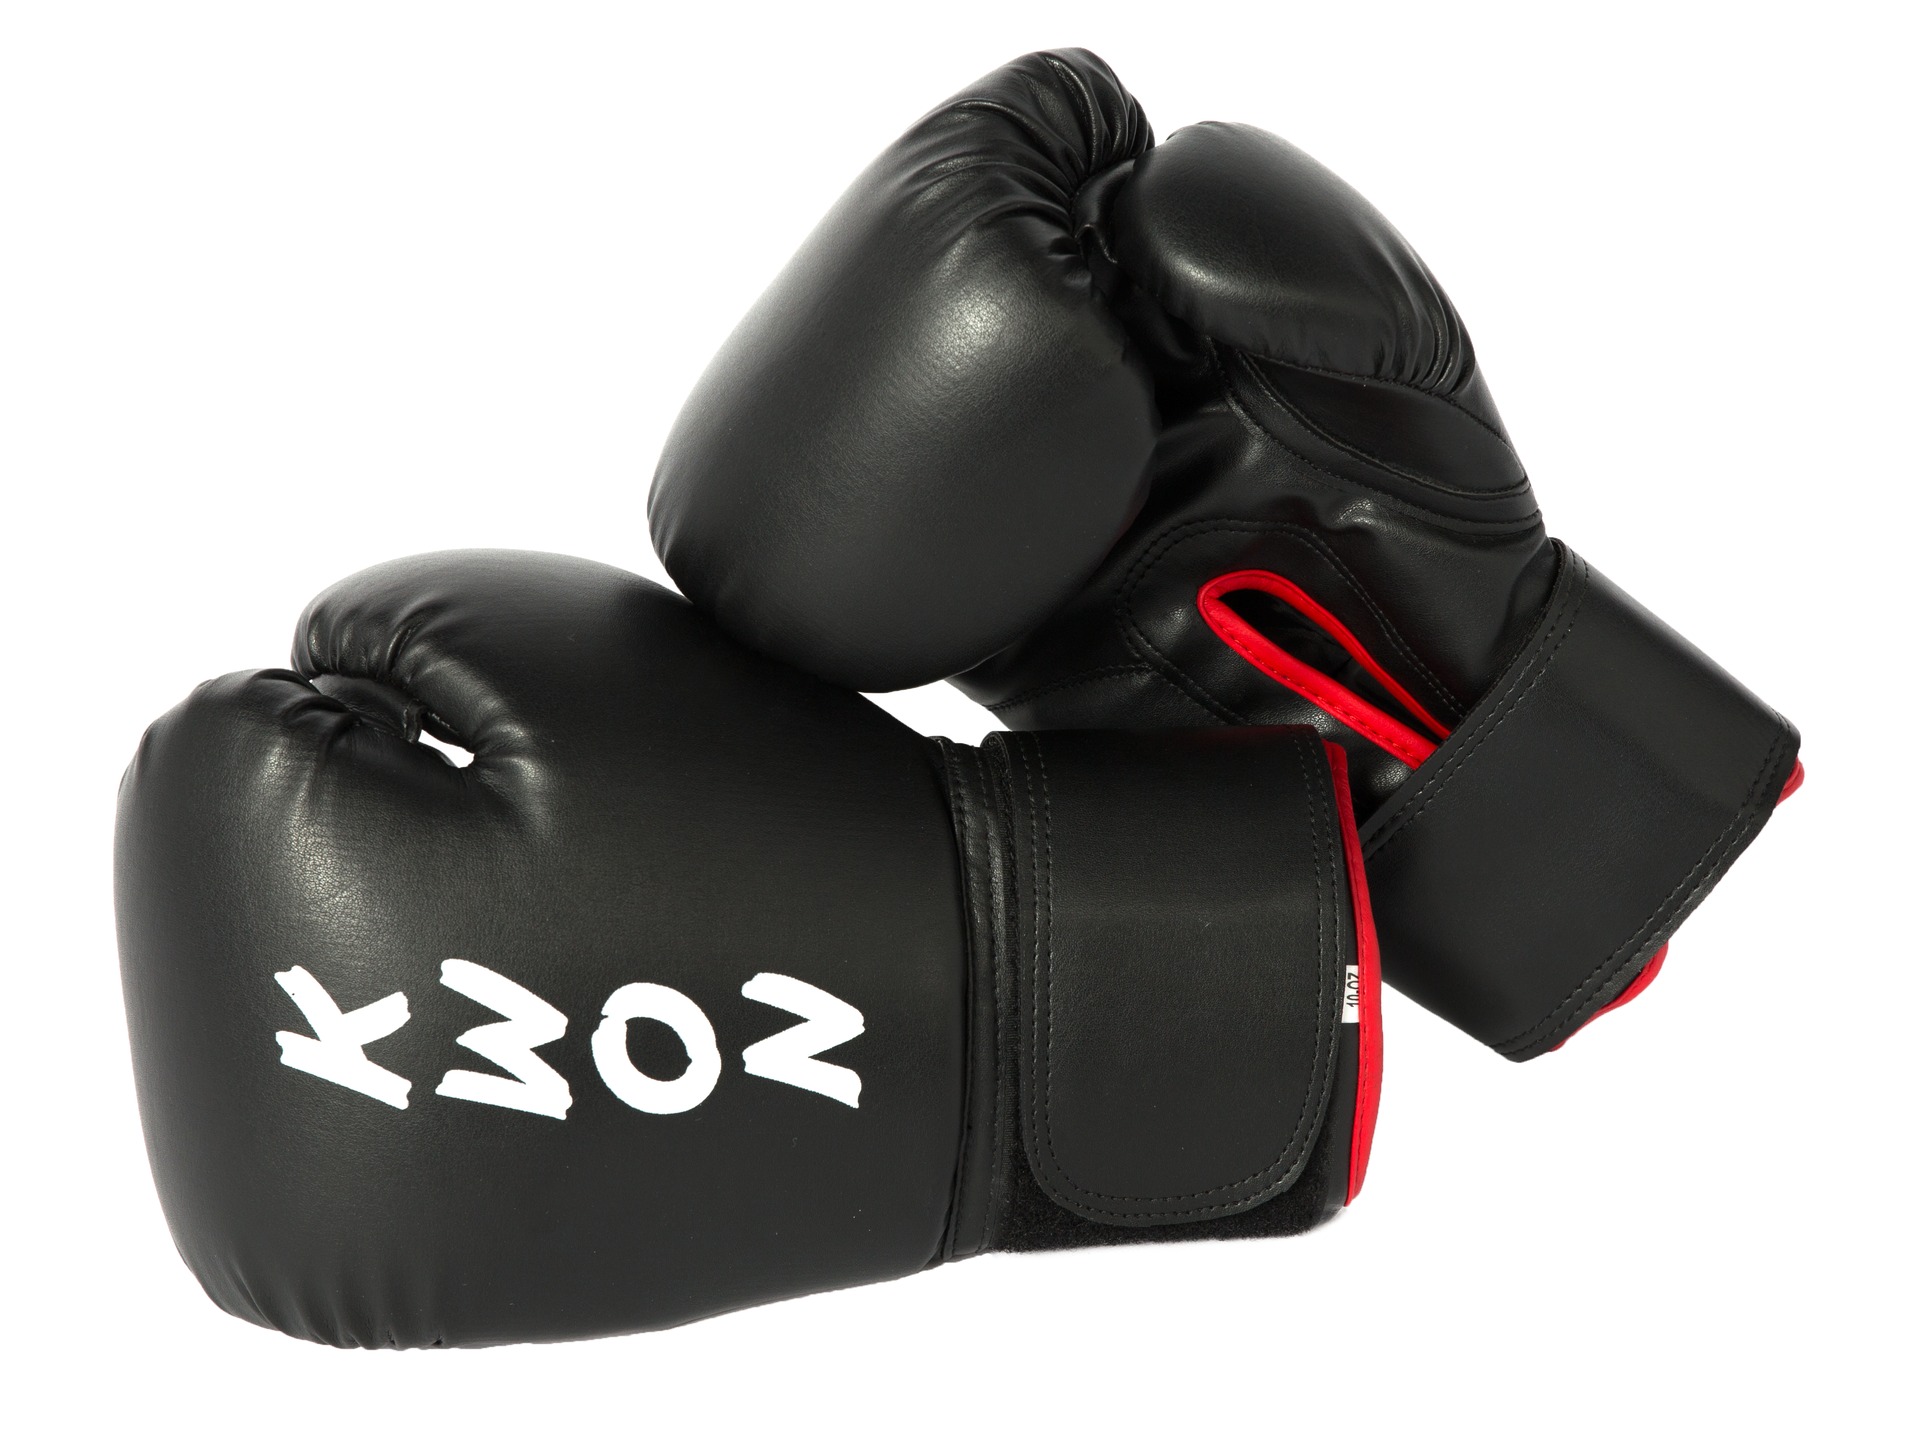 KWON Anfänger Boxhandschuhe Training | Handschuhe für Kickboxen und Boxen